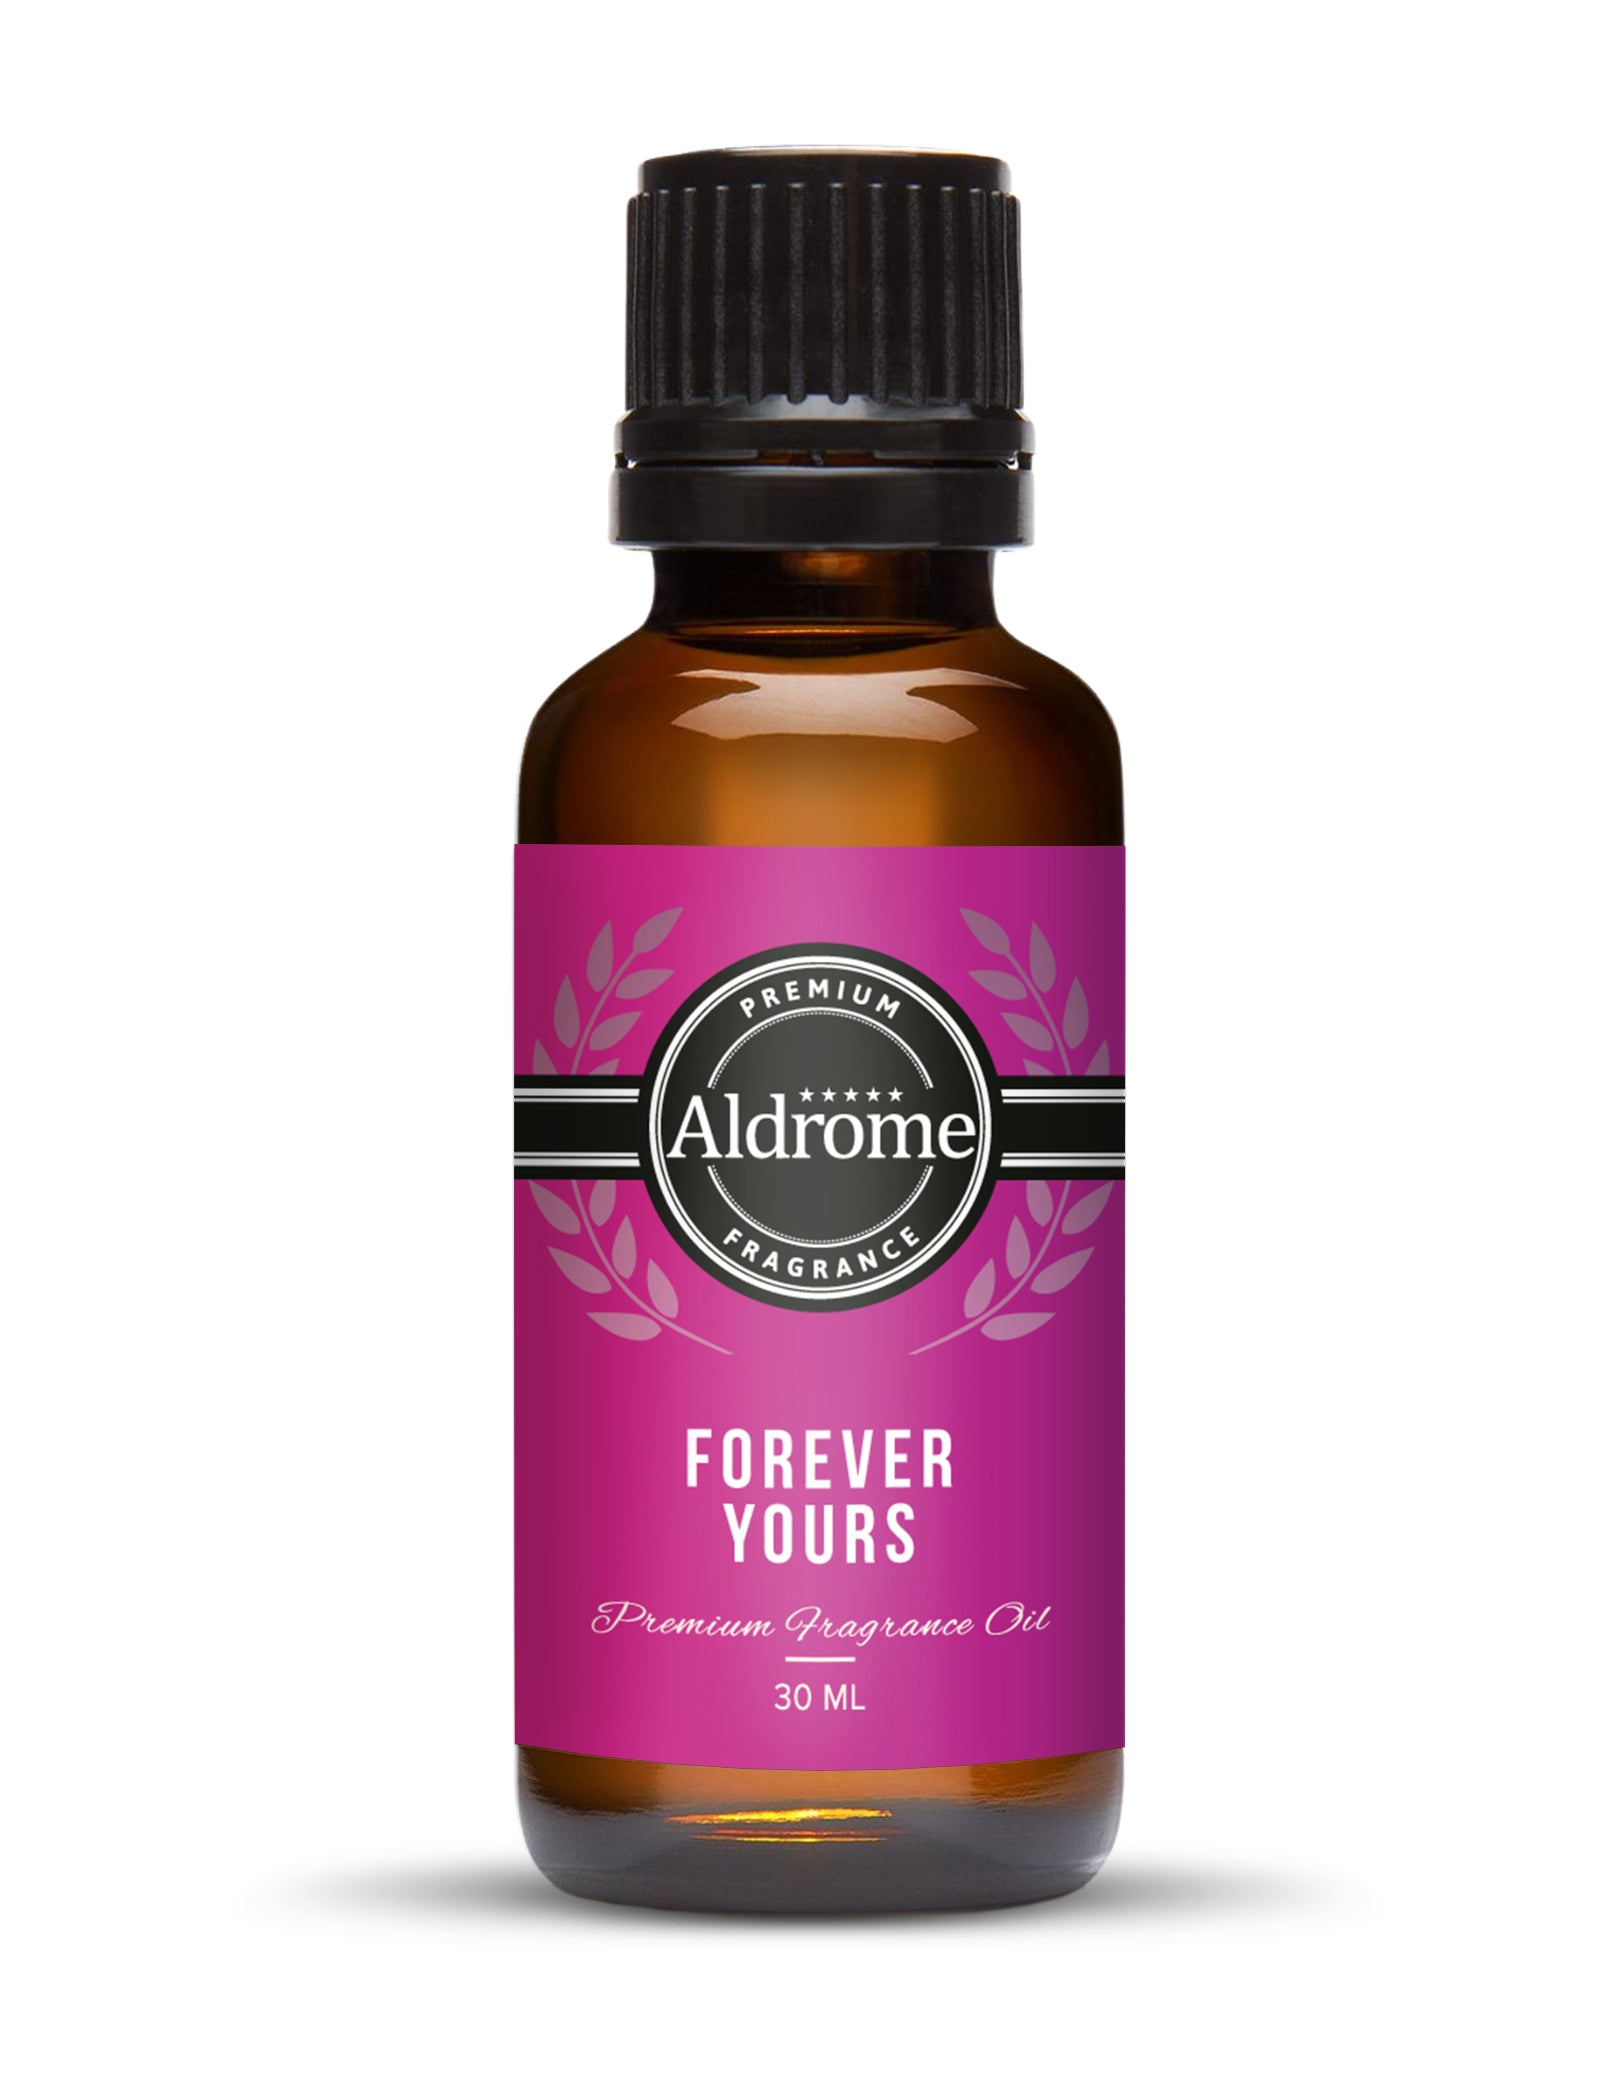 Forever yours Fragrance Oil - 30ml